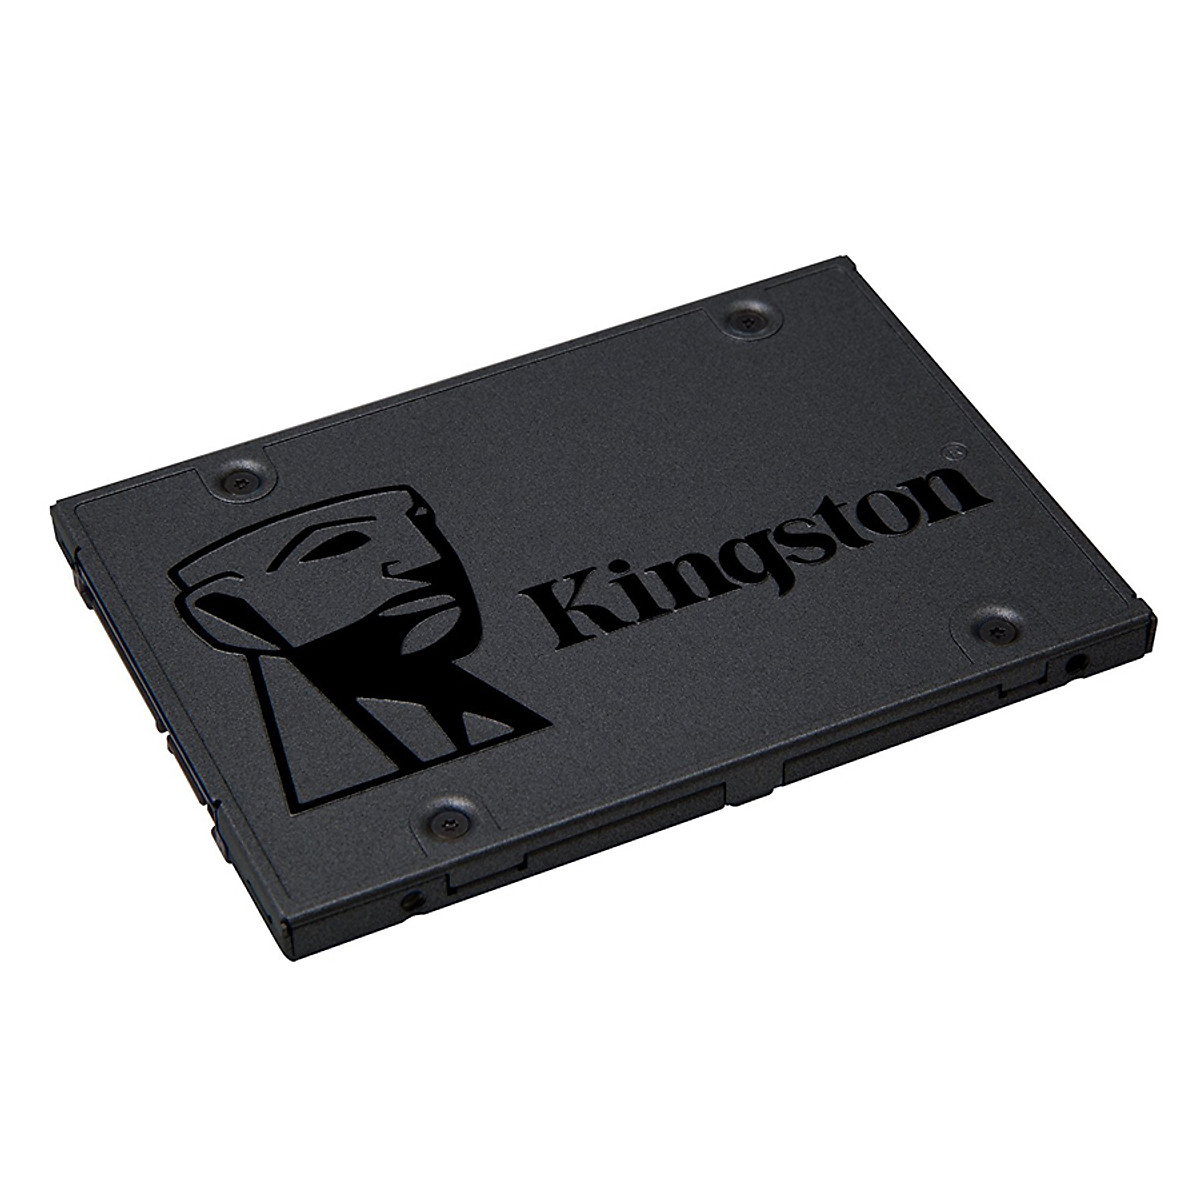 Hình ảnh Ổ Cứng SSD Kingston A400 (240GB) - Hàng Chính Hãng